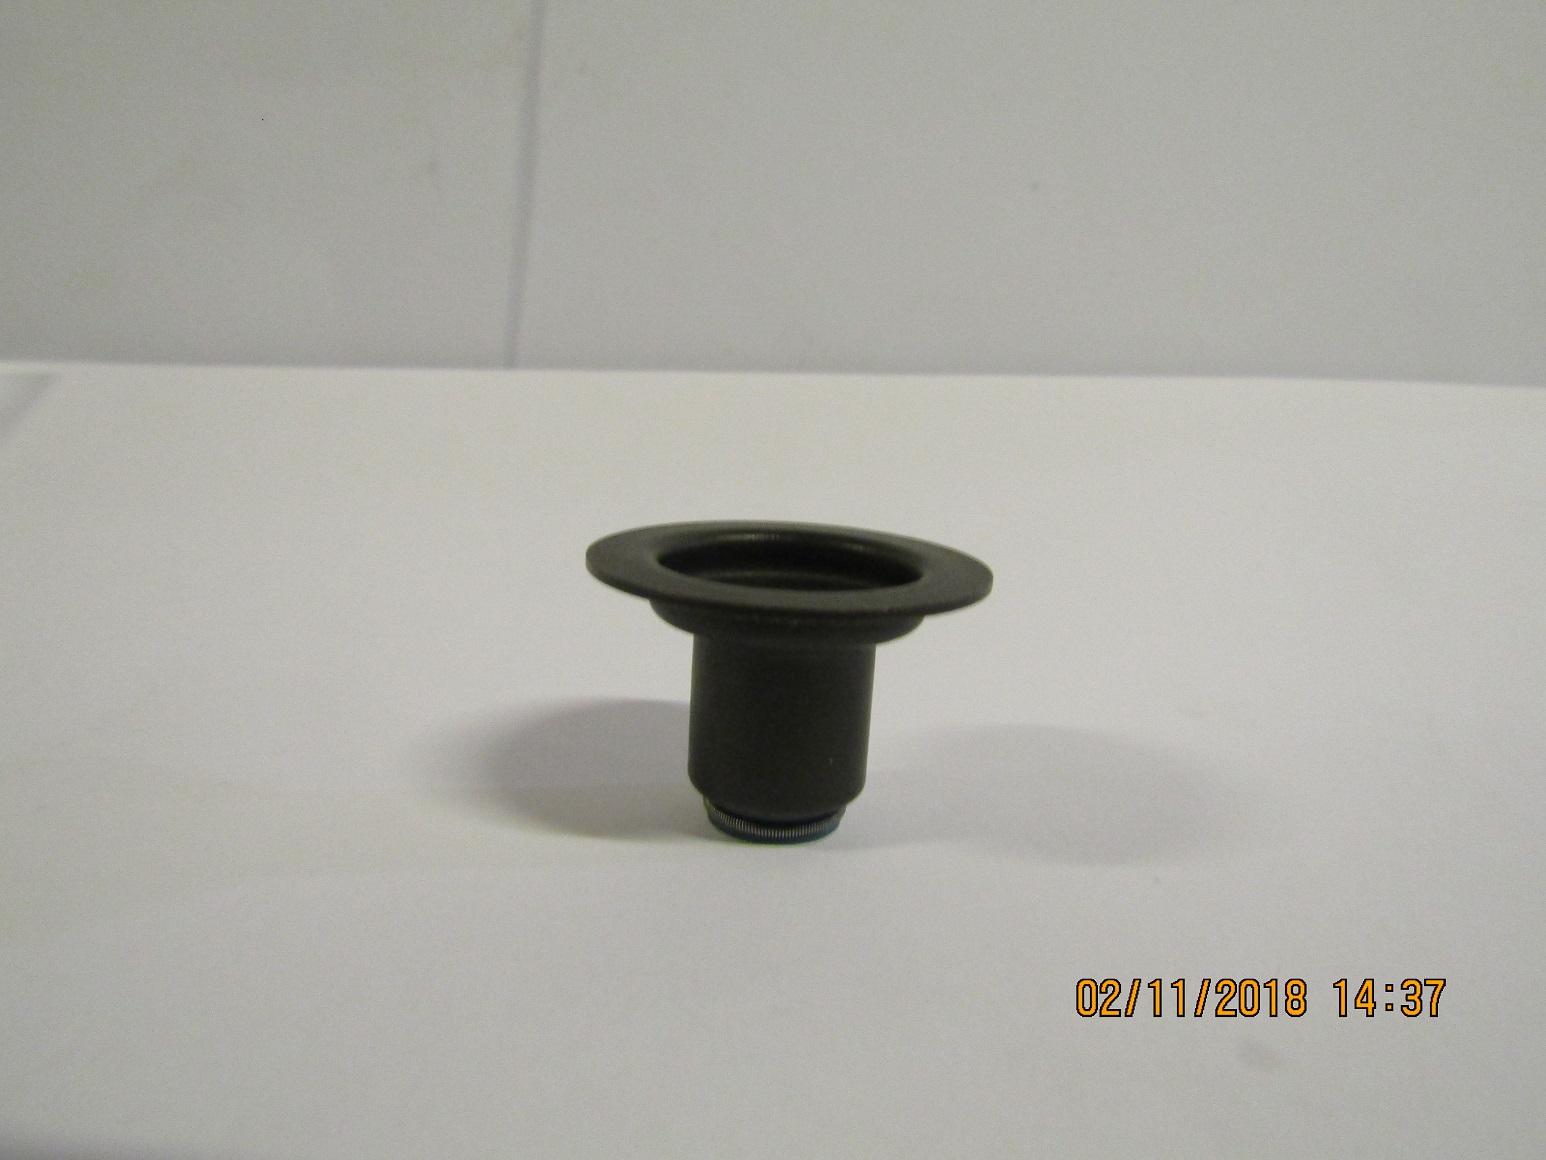 Колпачок маслосъёмный Baudouin 6M16G330/5 /Valve Stem Seal (1000549569)